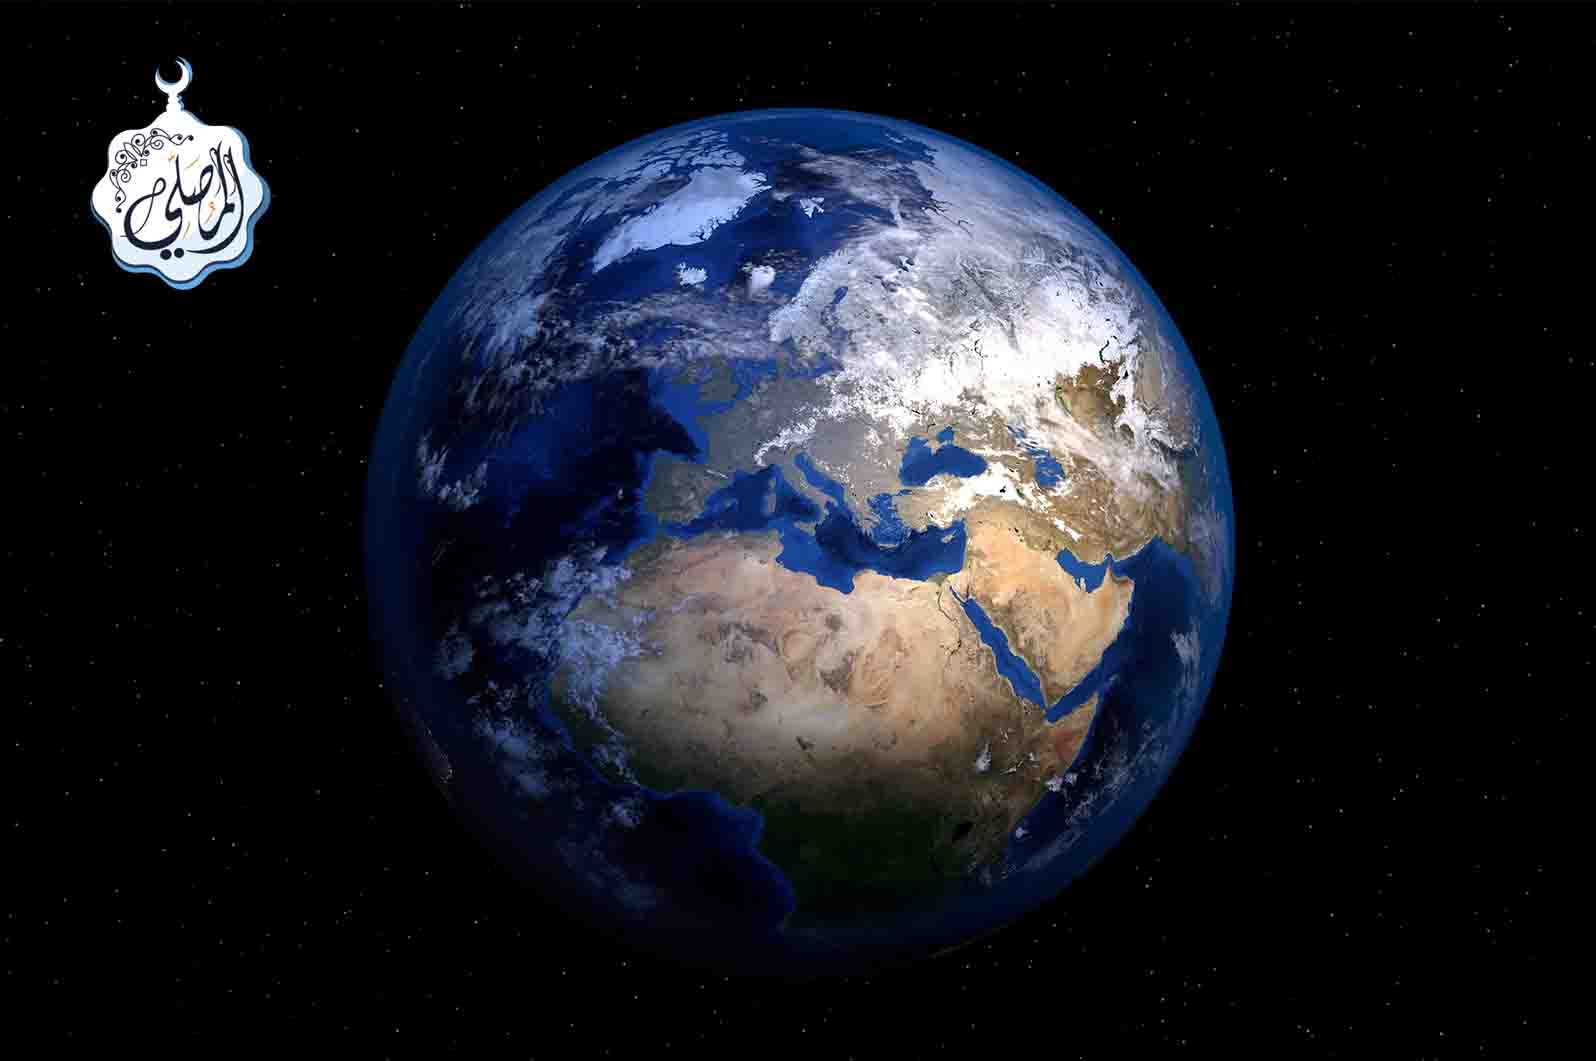 ثلاثة علماء مسلمين، اكتشفوا الجاذبية الأرضية قبل نيوتن بـ 700 عام!